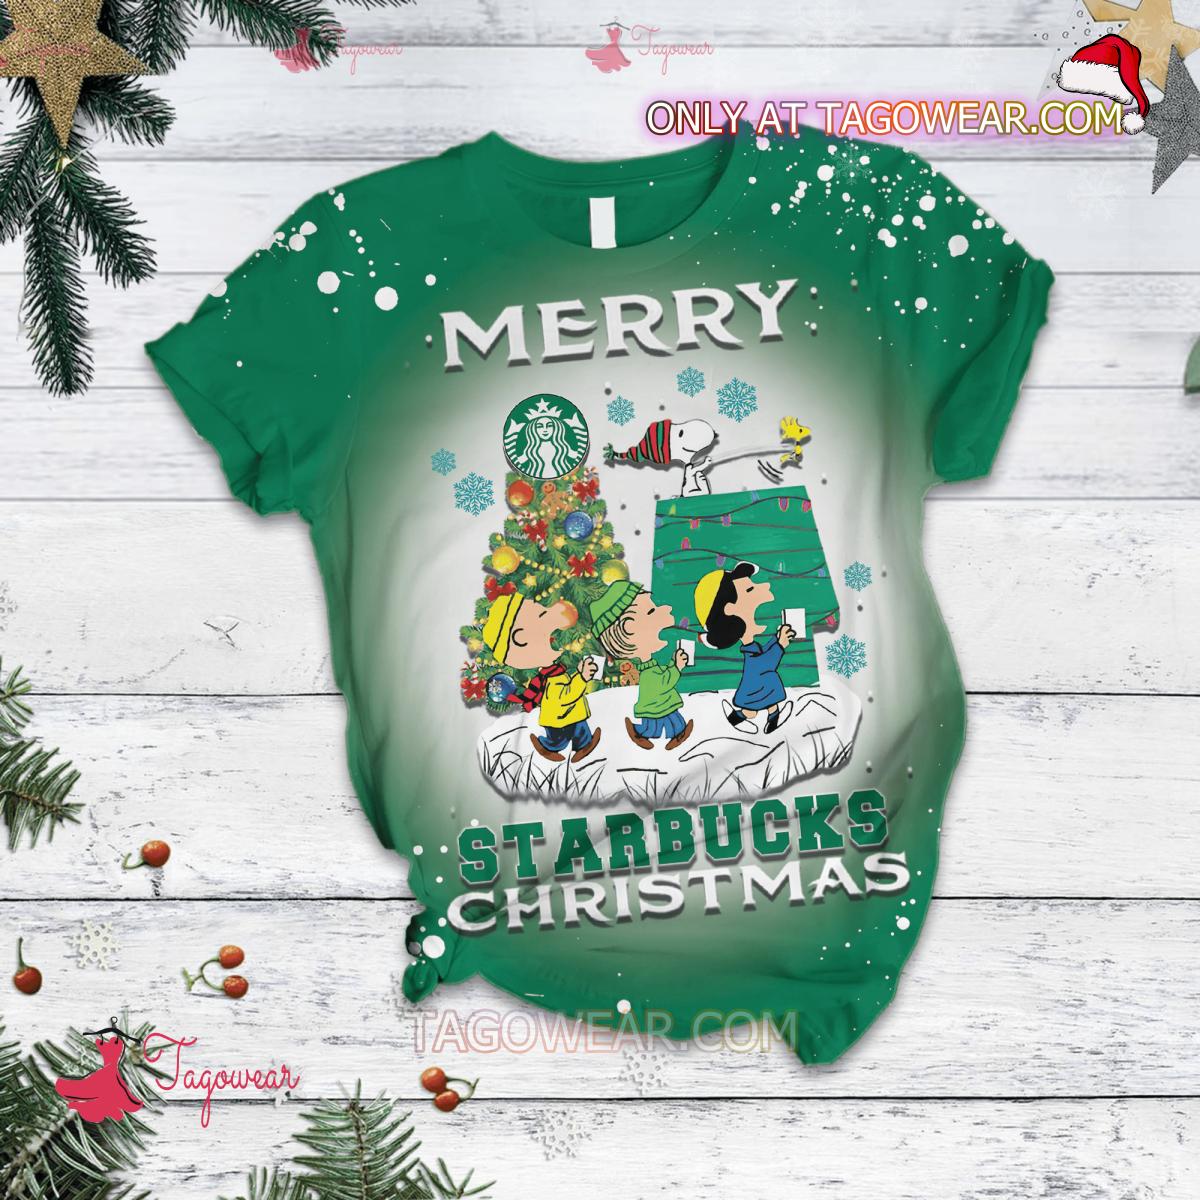 The Peanut Merry Starbucks Christmas Pajamas Set a